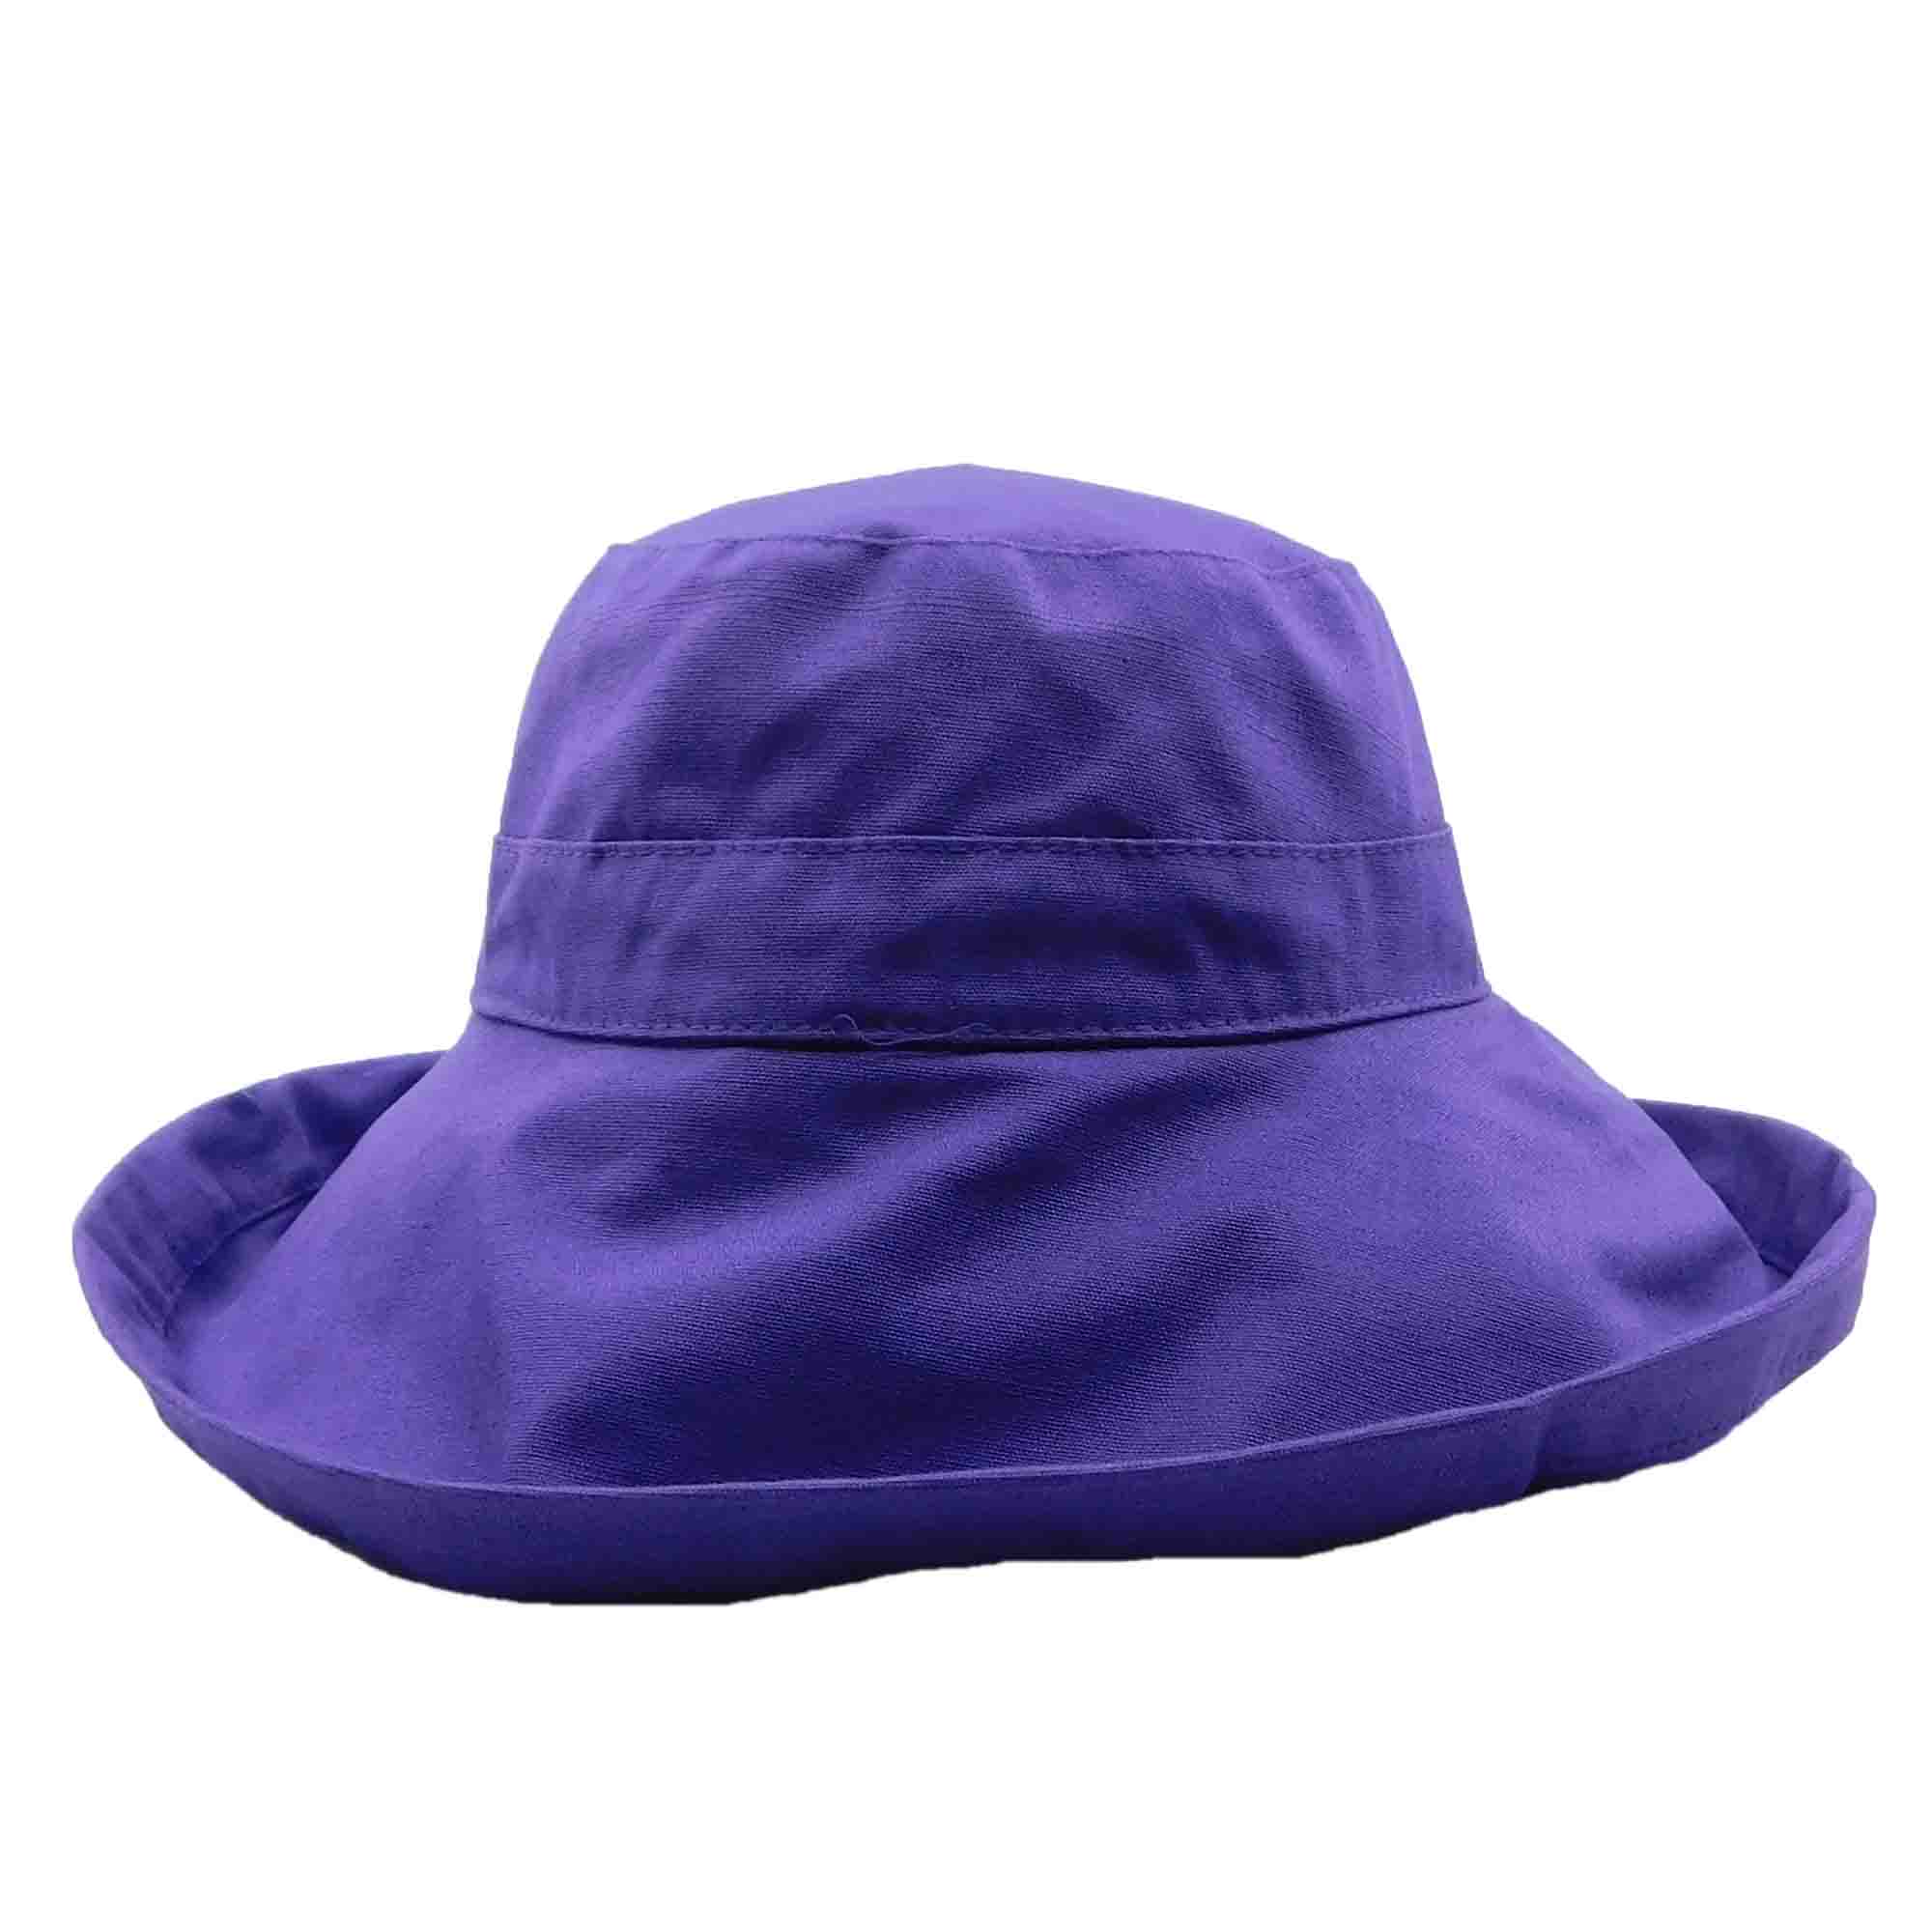 Cotton Breton Hat with Shapeable Brim - Milani Hat Kettle Brim Hat Milani Hats bh010PP Purple M/L (57 - 58 cm) 